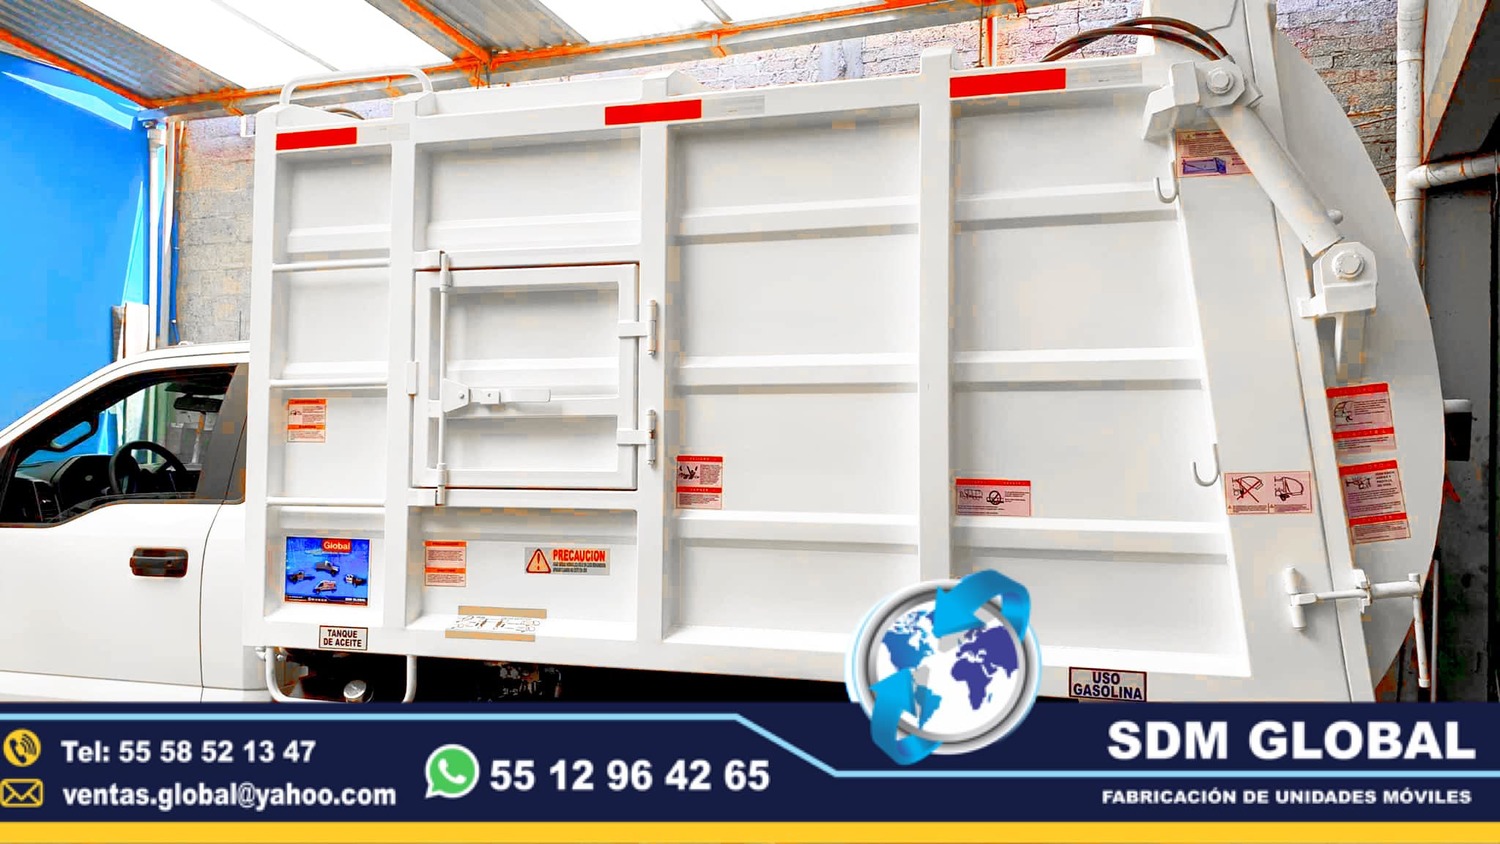 <span style="font-weight: bold;">Camiones recolectores de basura en SDM Global Mexico 8888</span><br>